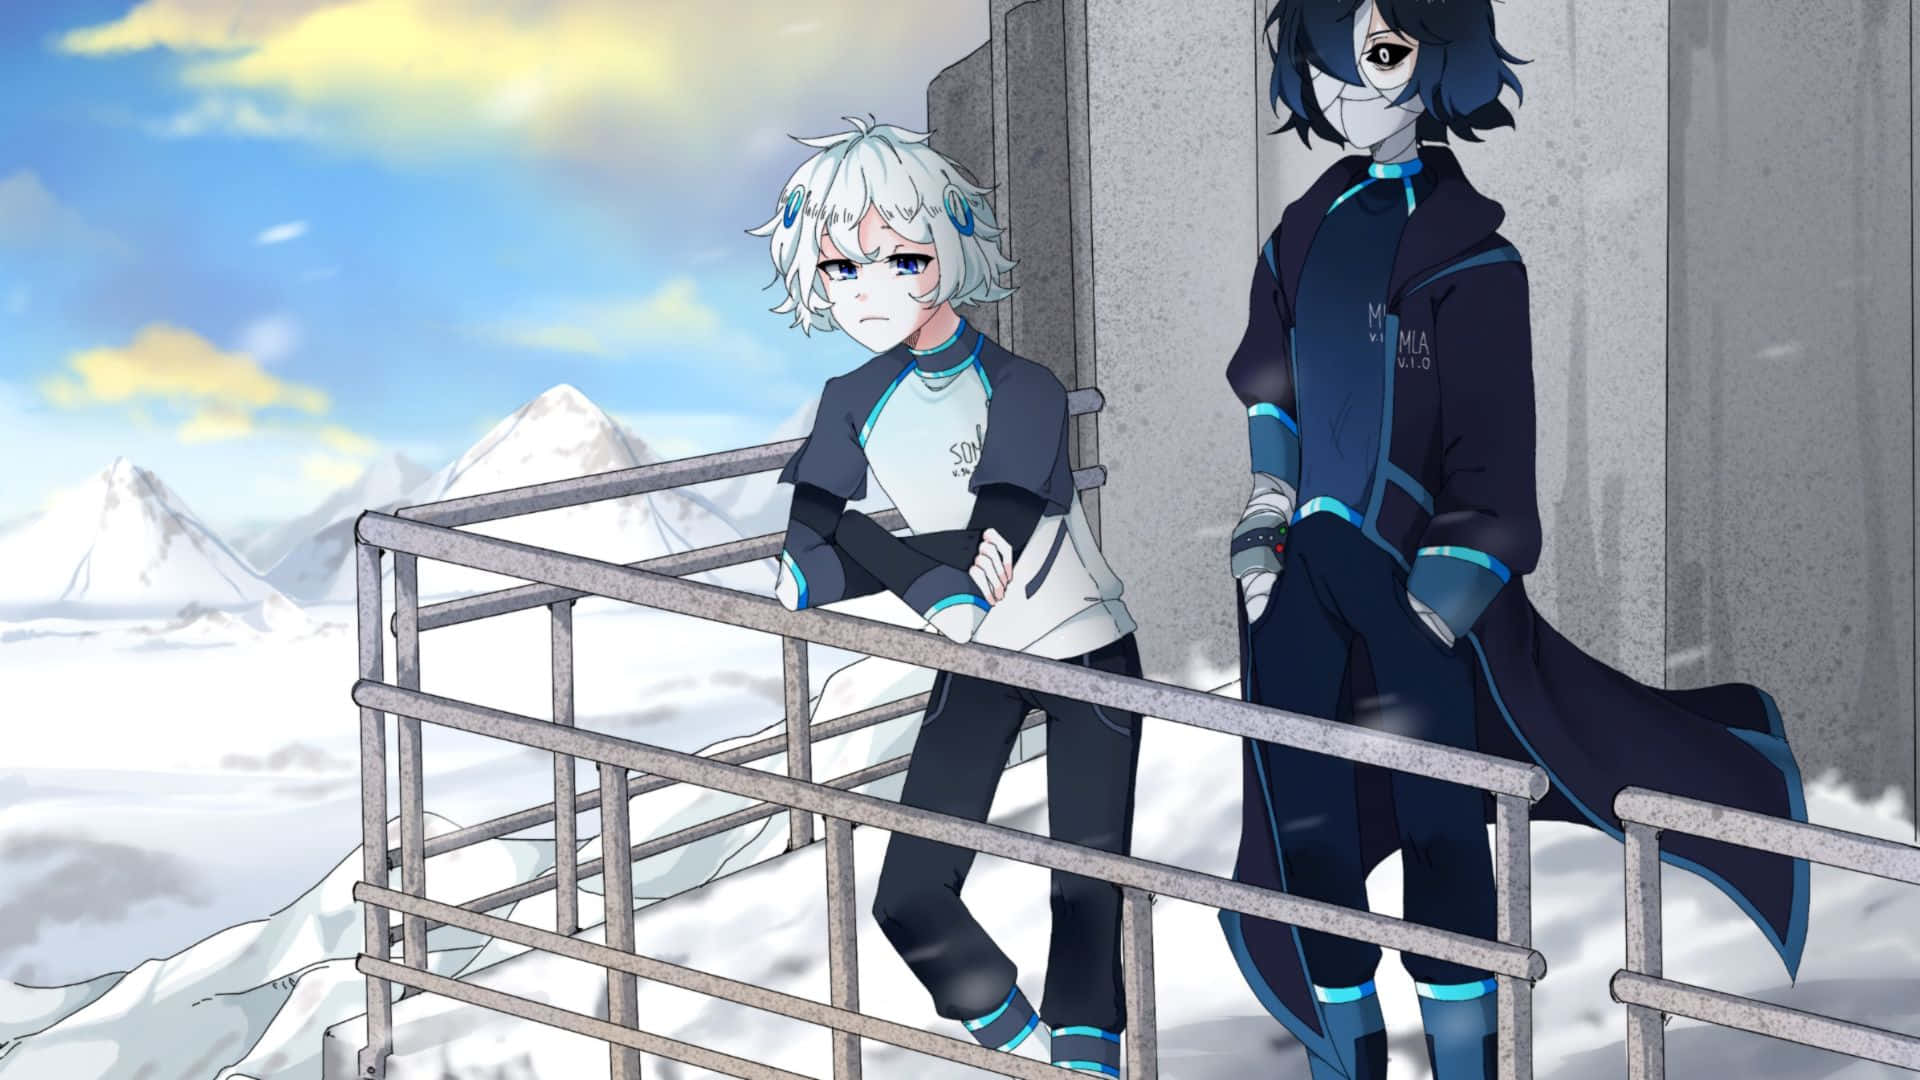 Duepersonaggi Di Anime In Piedi Su Un Balcone Nella Neve